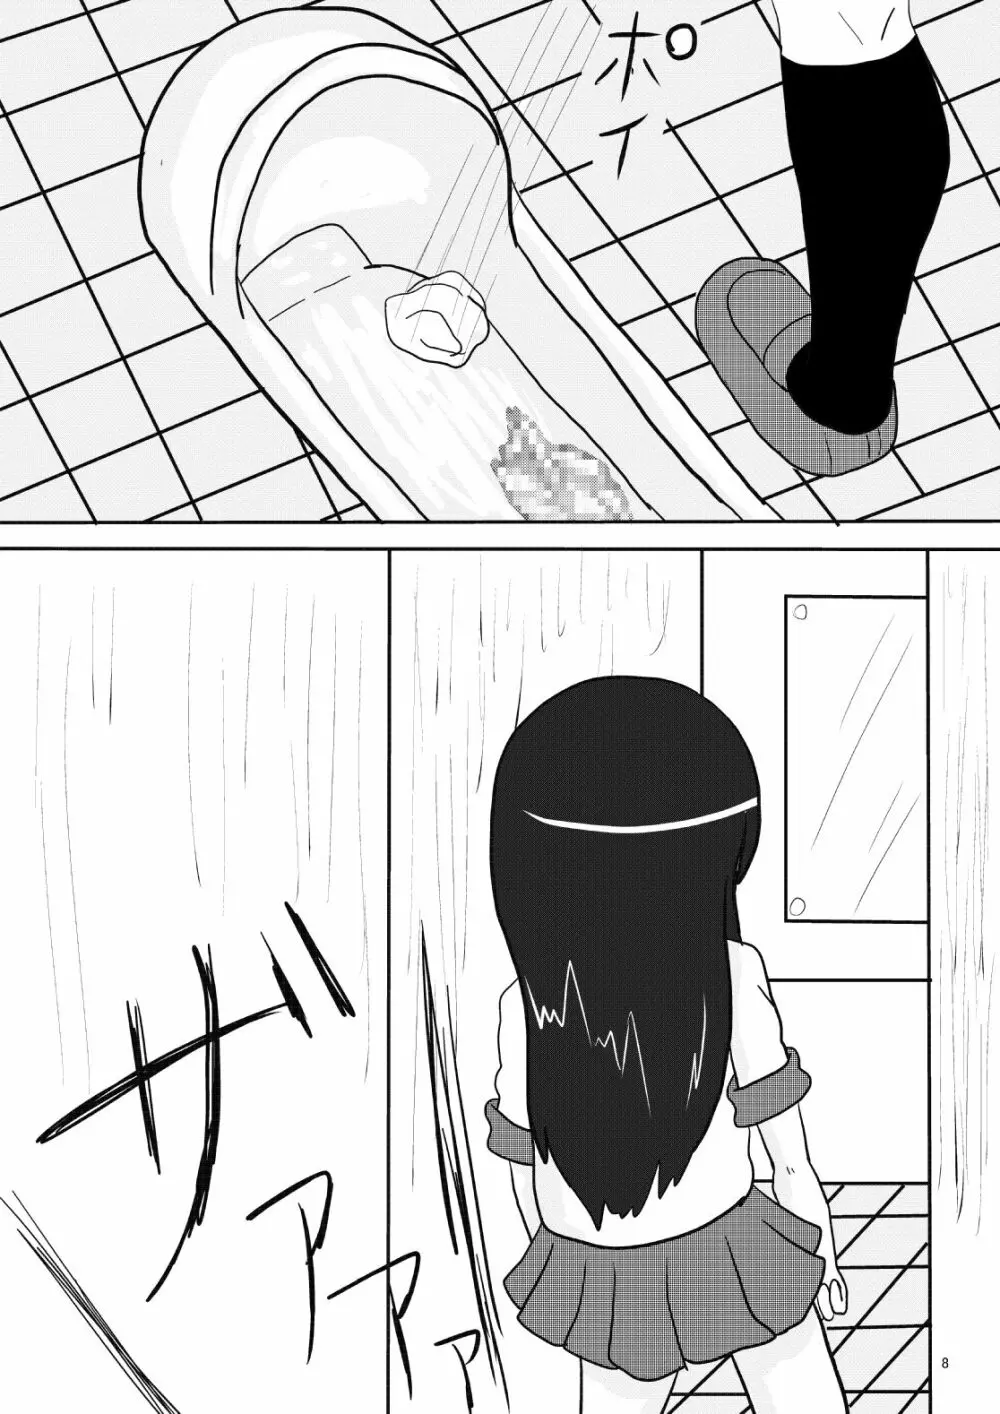 俺妹のあやせ桐乃の排泄漫画です 8ページ